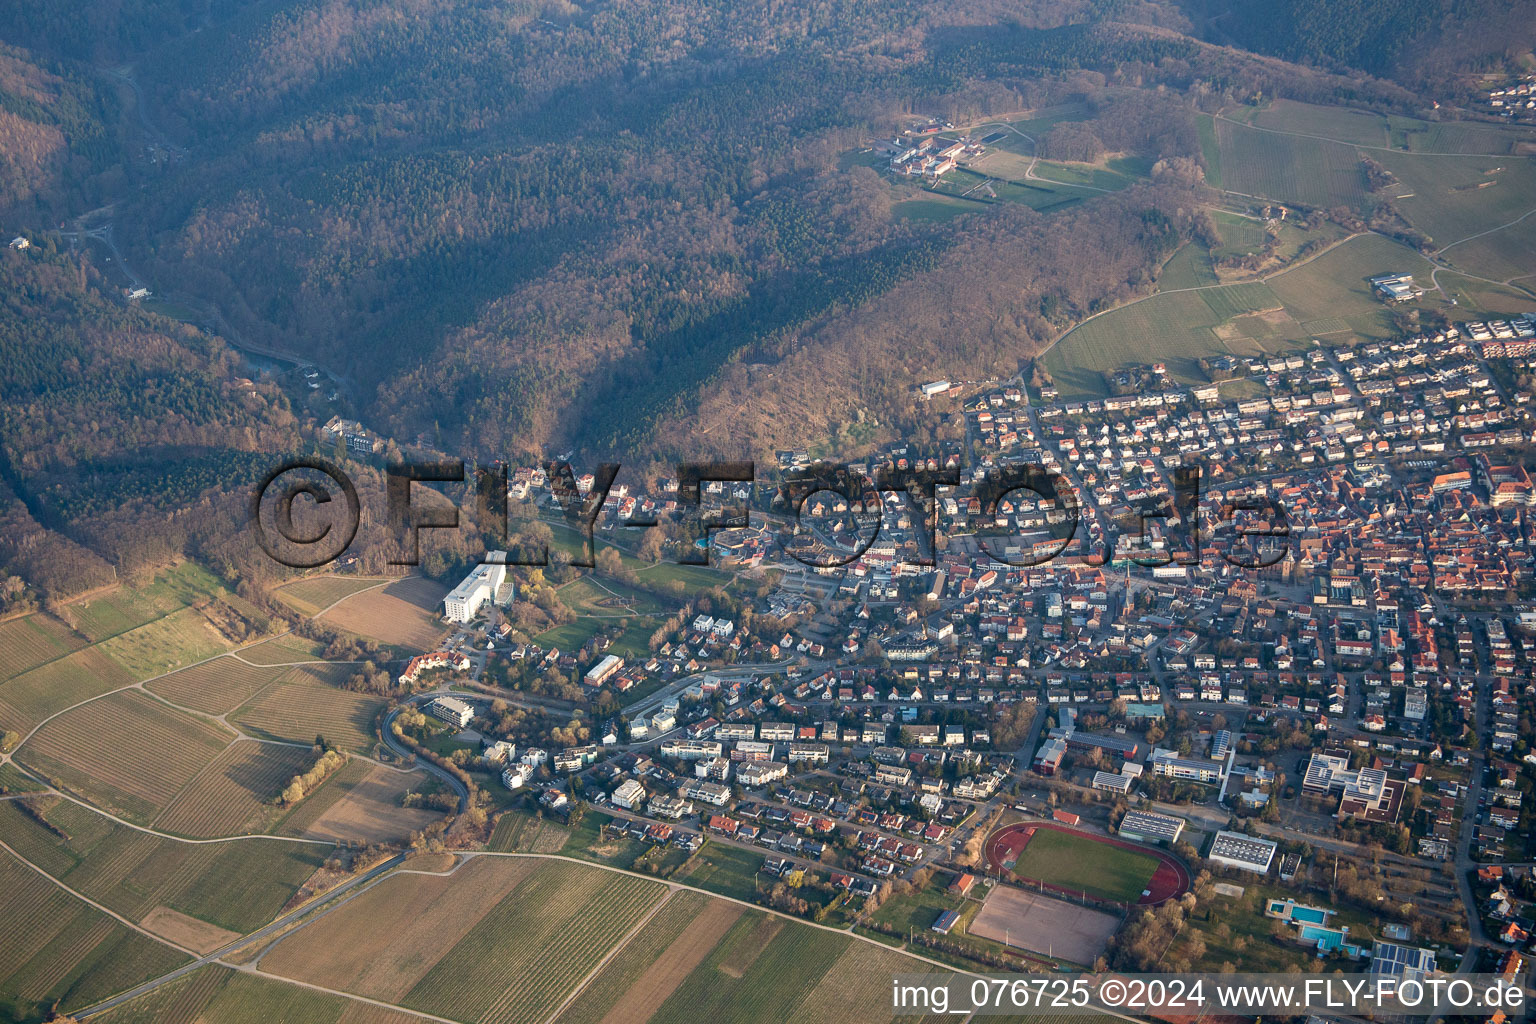 Bad Bergzabern dans le département Rhénanie-Palatinat, Allemagne vue d'en haut